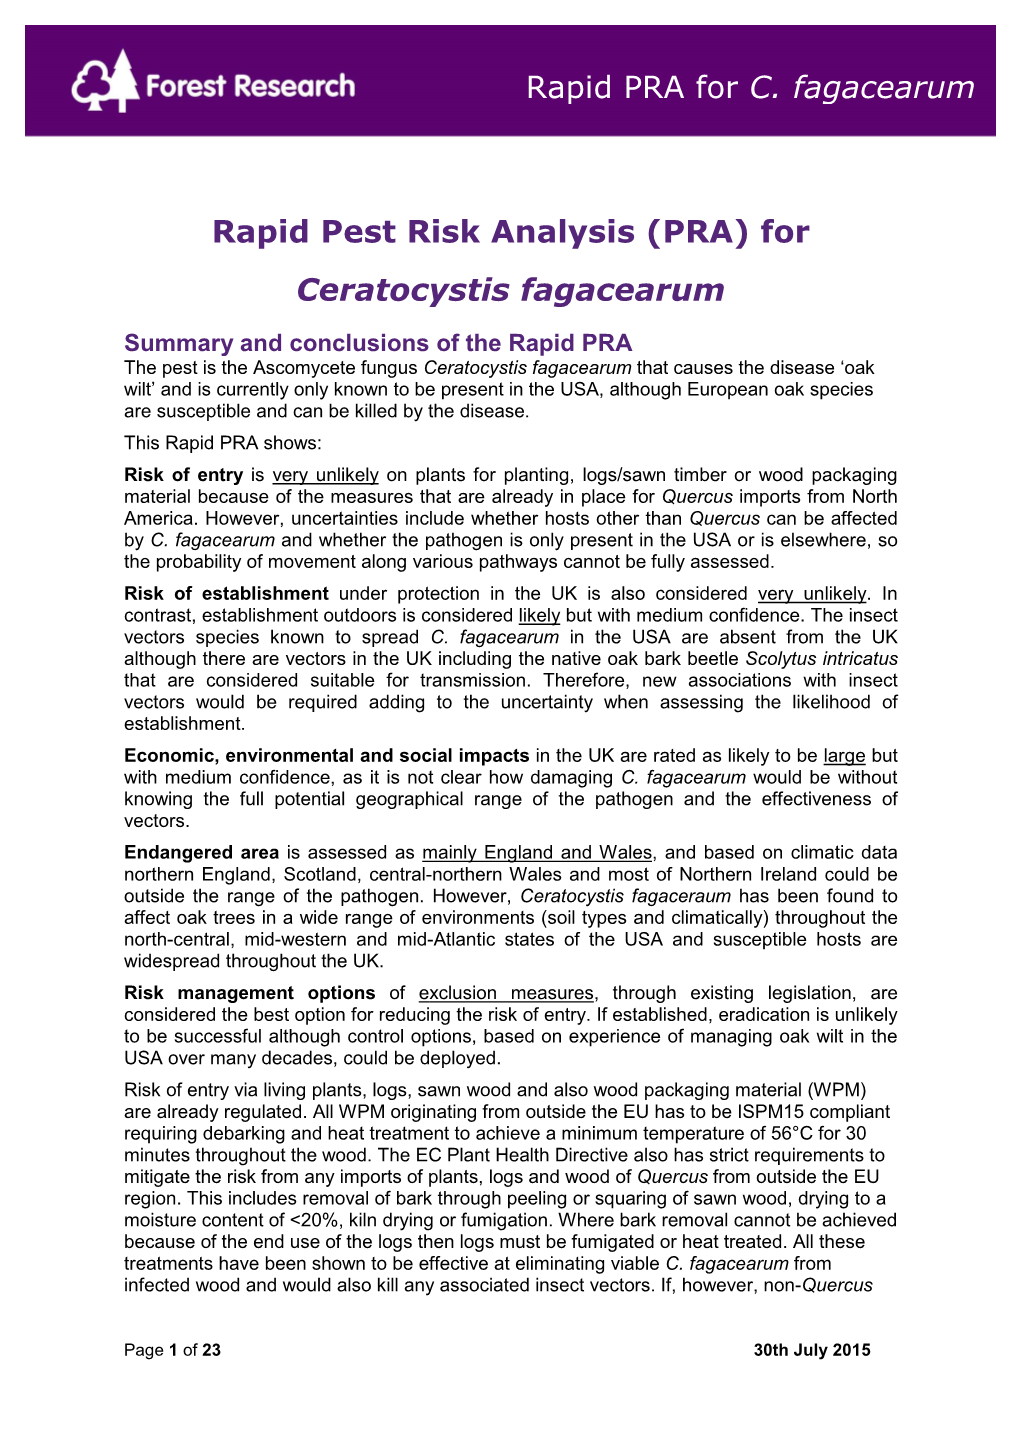 Rapid Pest Risk Analysis (PRA) for Ceratocystis Fagacearum